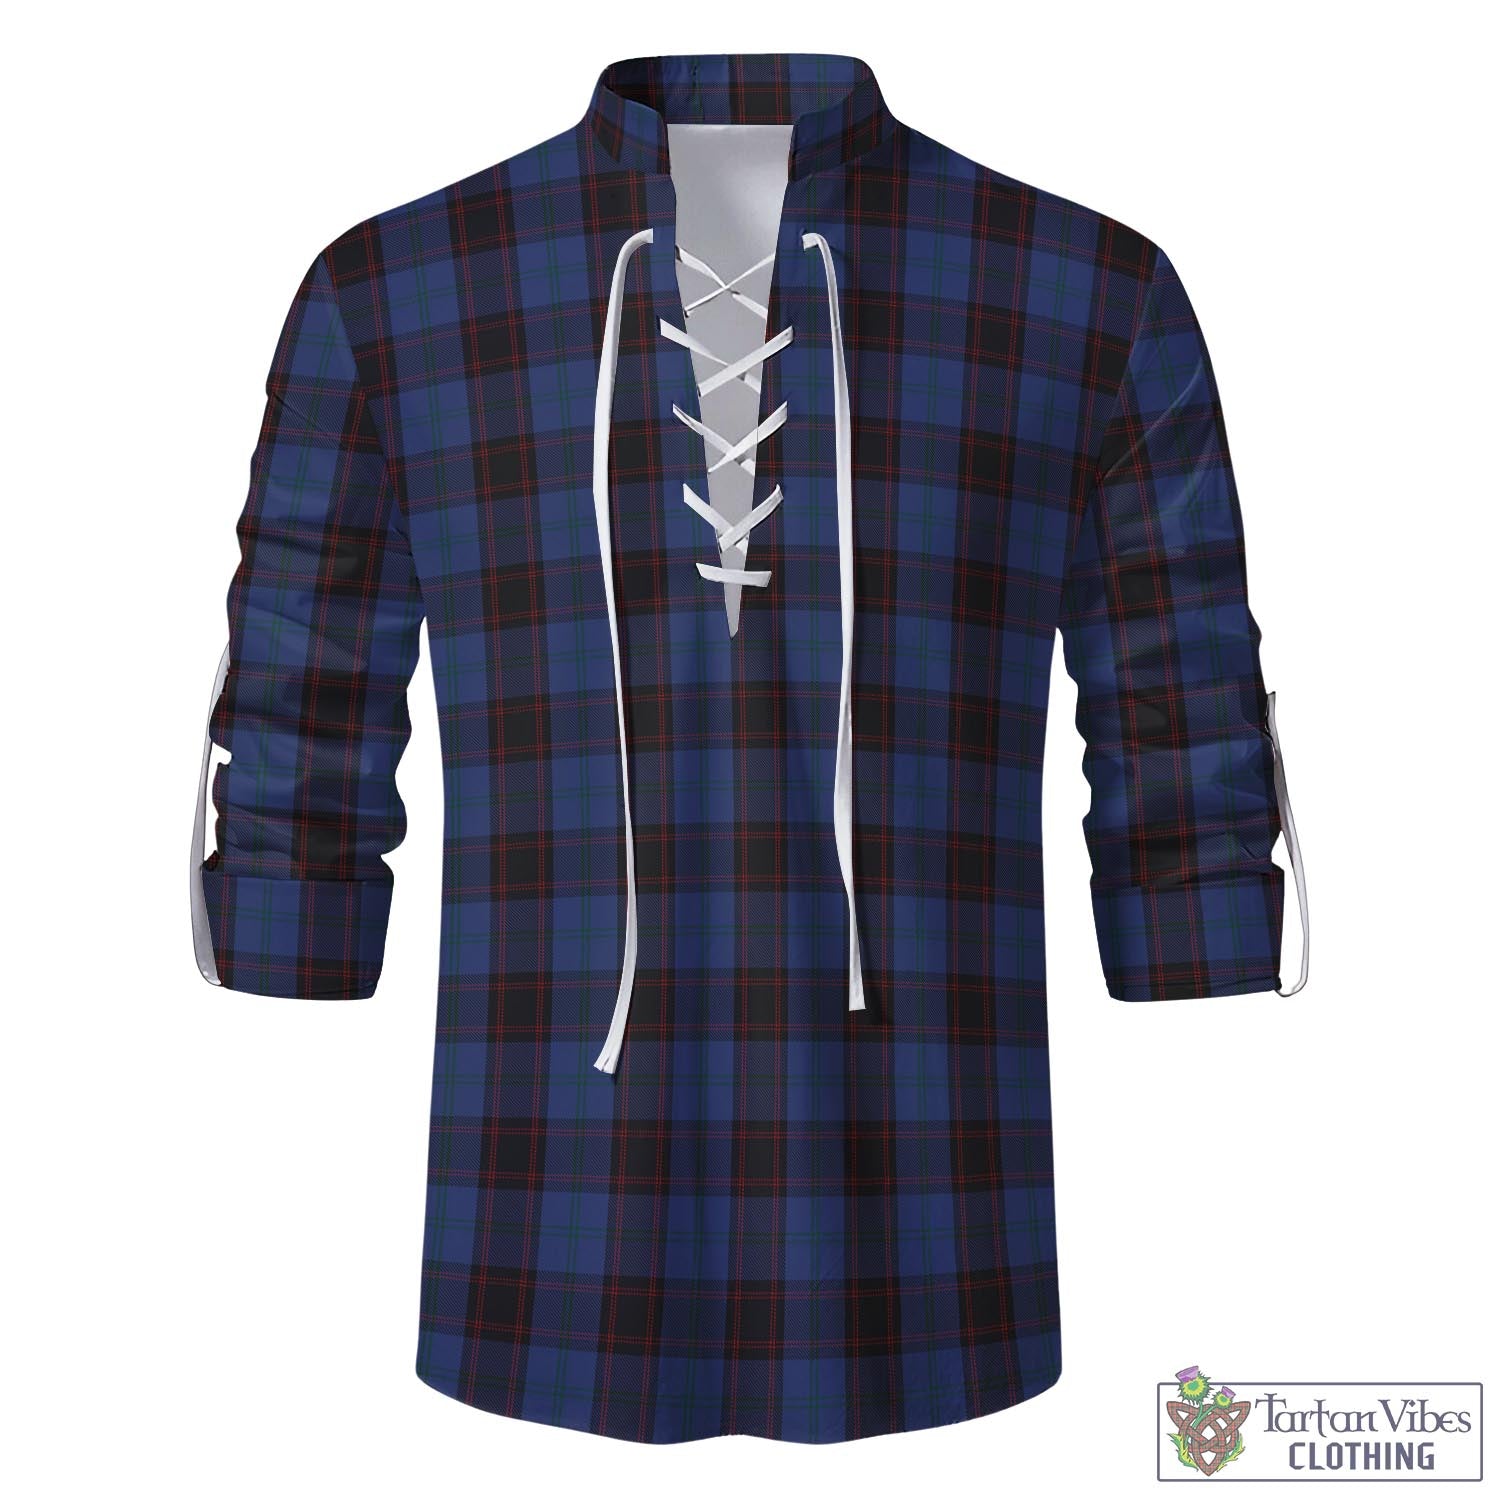 Tartan Vibes Clothing Home (Hume) Tartan Men's Scottish Traditional Jacobite Ghillie Kilt Shirt